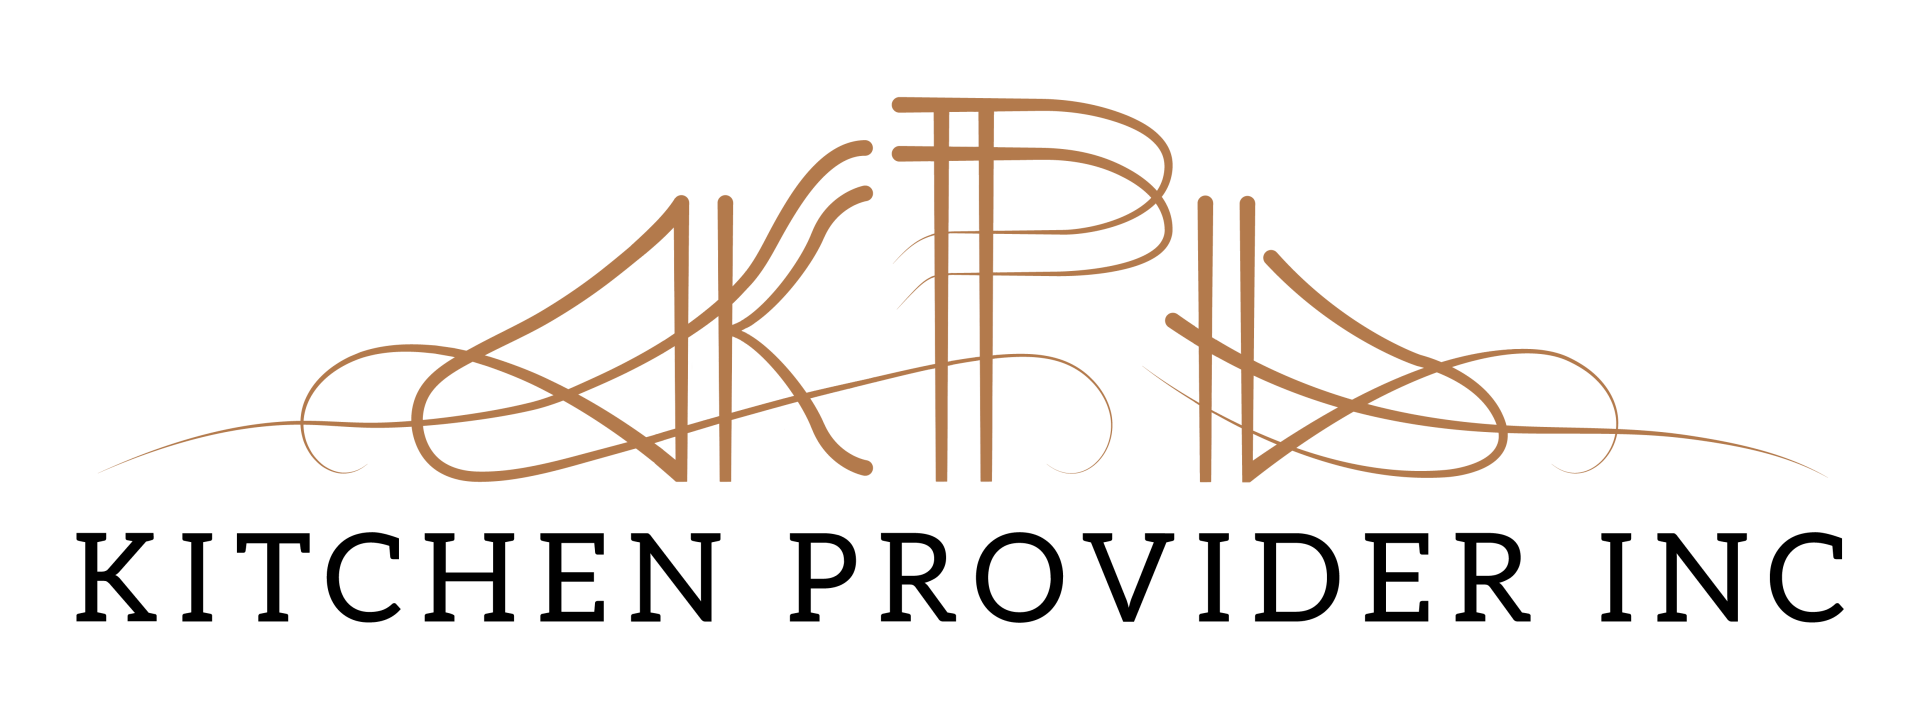 Kitchen Provider Inc